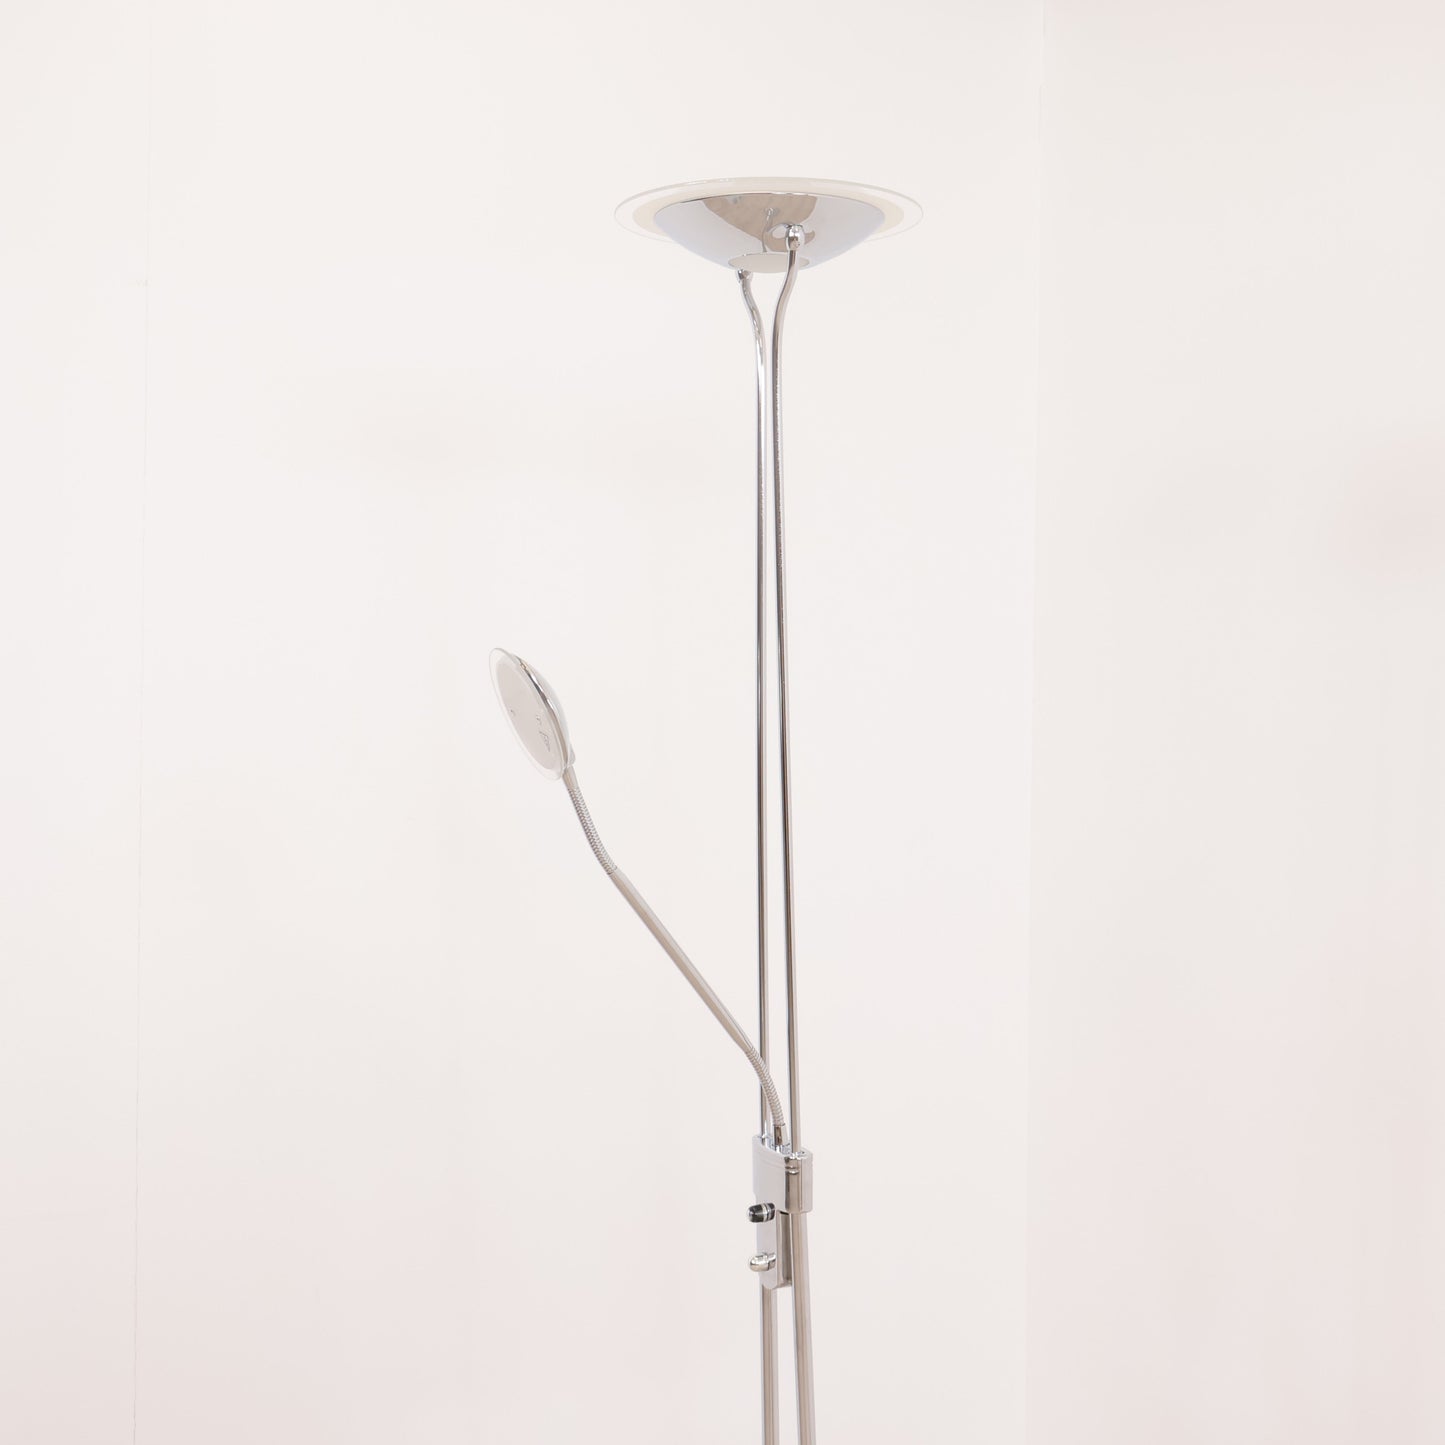 Scan Light AS stålampe i moderne design med krom ramme og to lampehoder